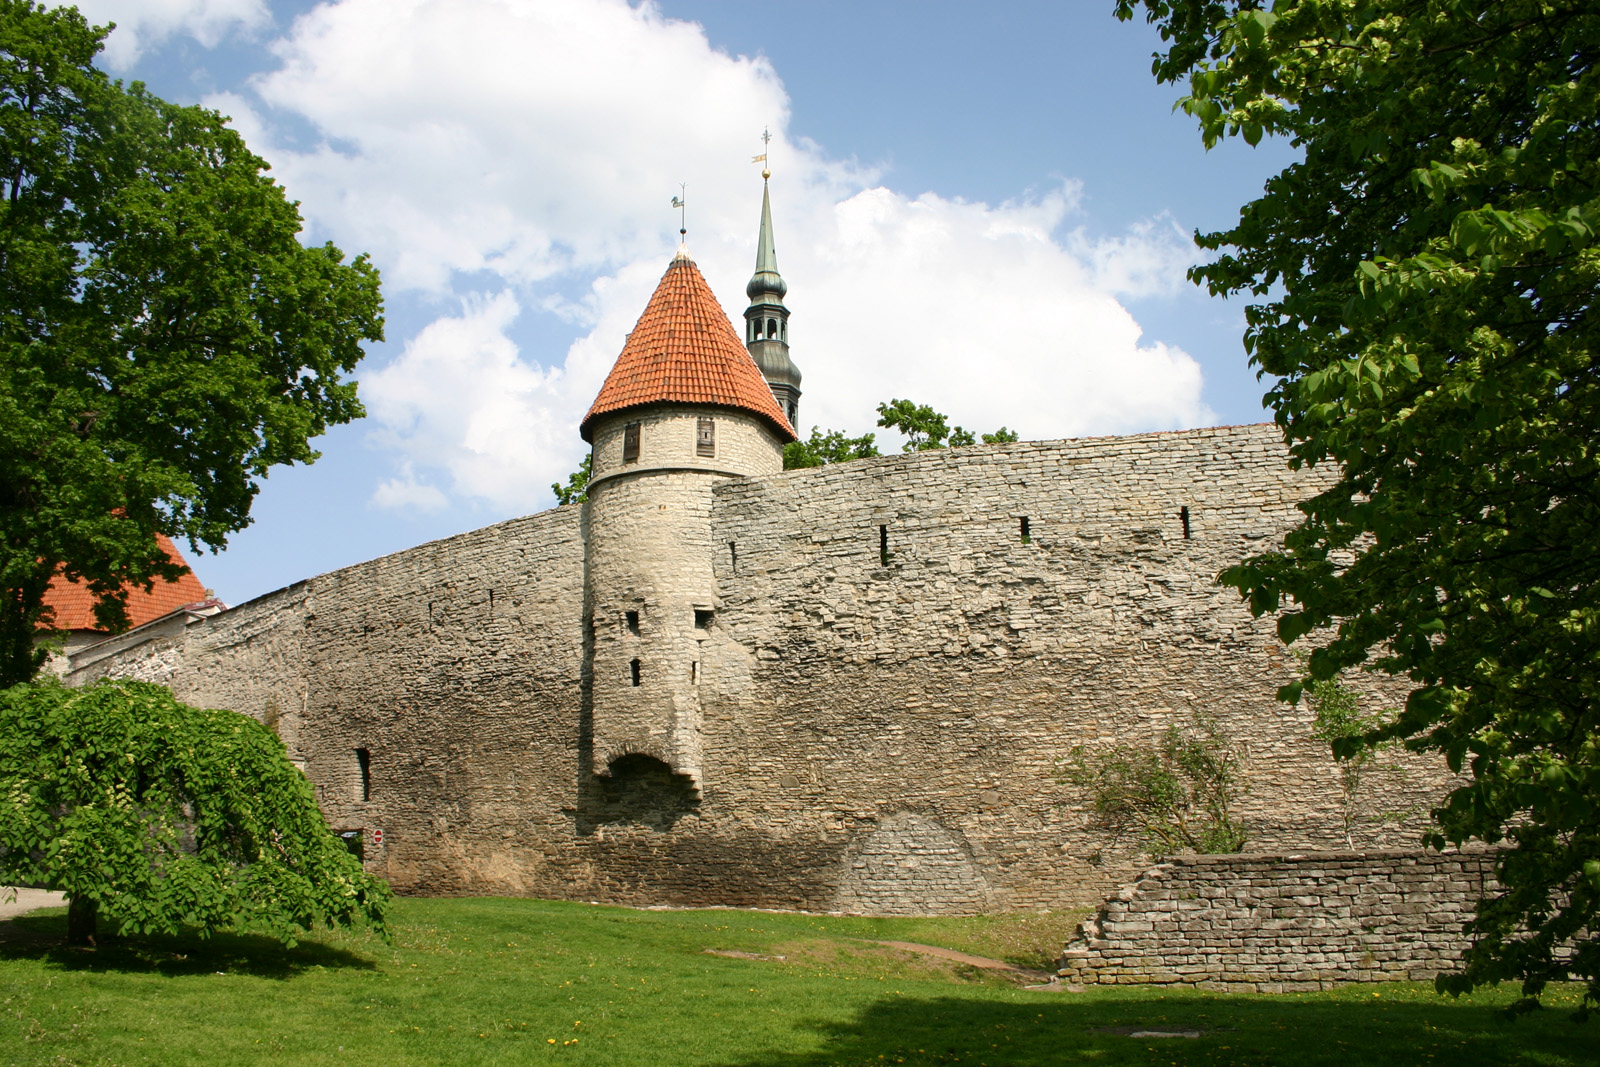 The city walls (2)